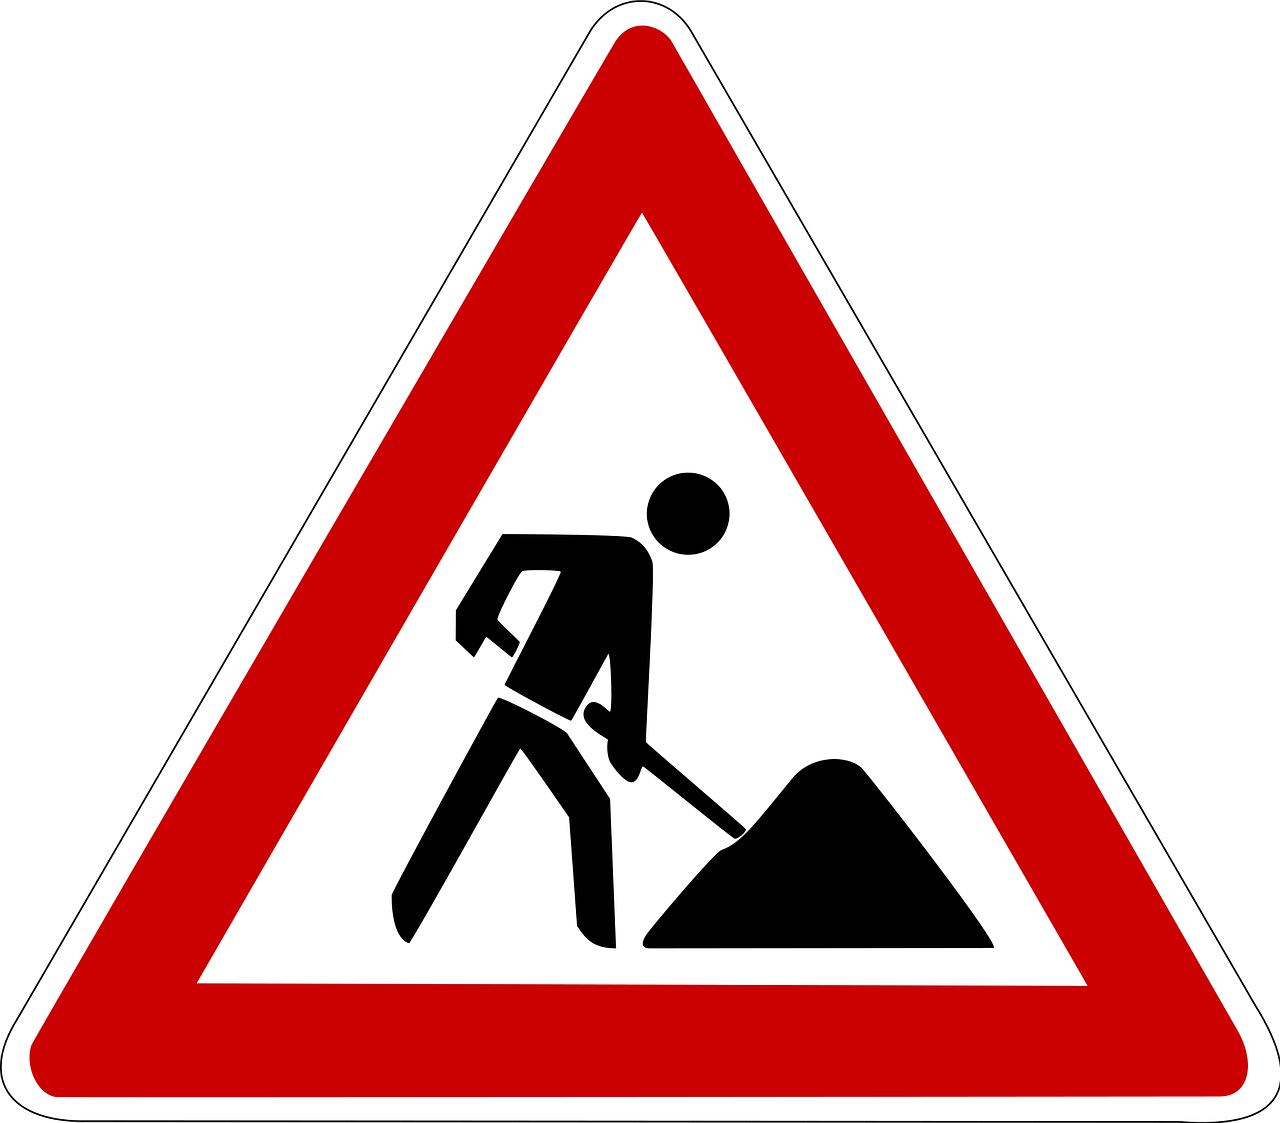 In der Dietrich-Boenhoffer-Straße und Julius-Leber-Straße muss ab dem 23. Mai mit Verkehrsbehinderungen gerechnet werden. Symbolbild: pixabay